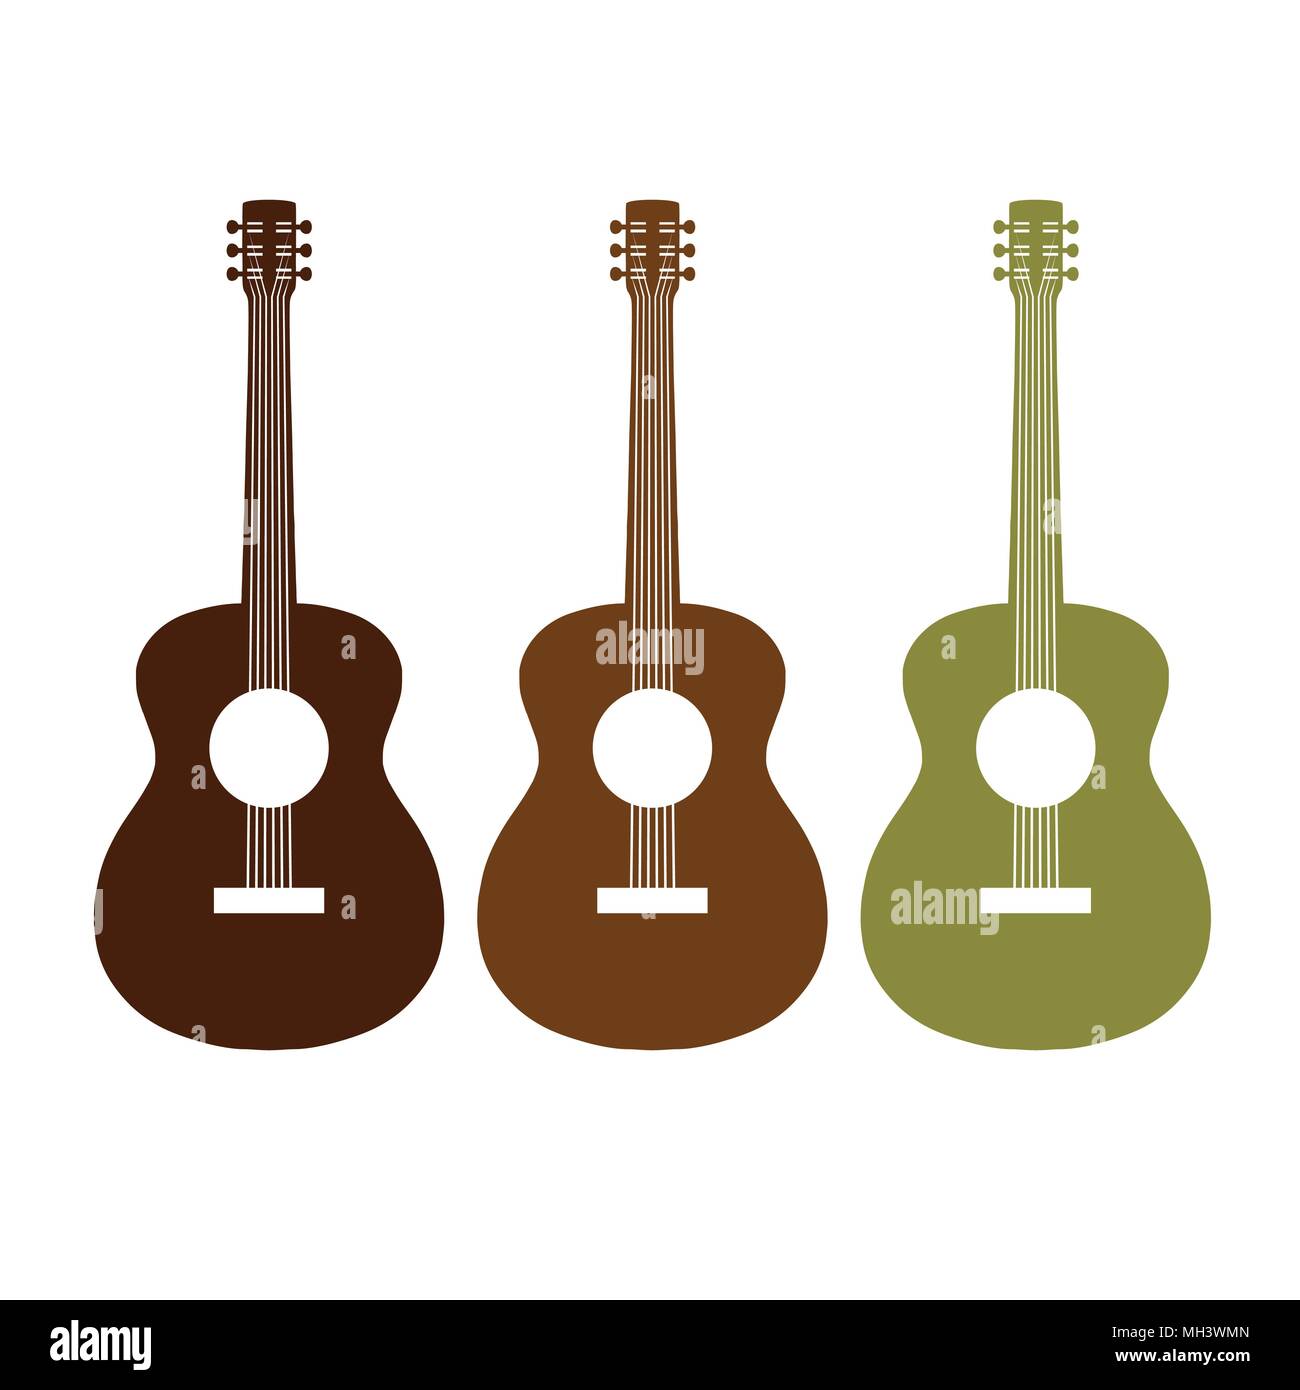 Akustik Gitarre Grafik Vektor Symbol Grafik Logo Design Stock-Vektorgrafik  - Alamy